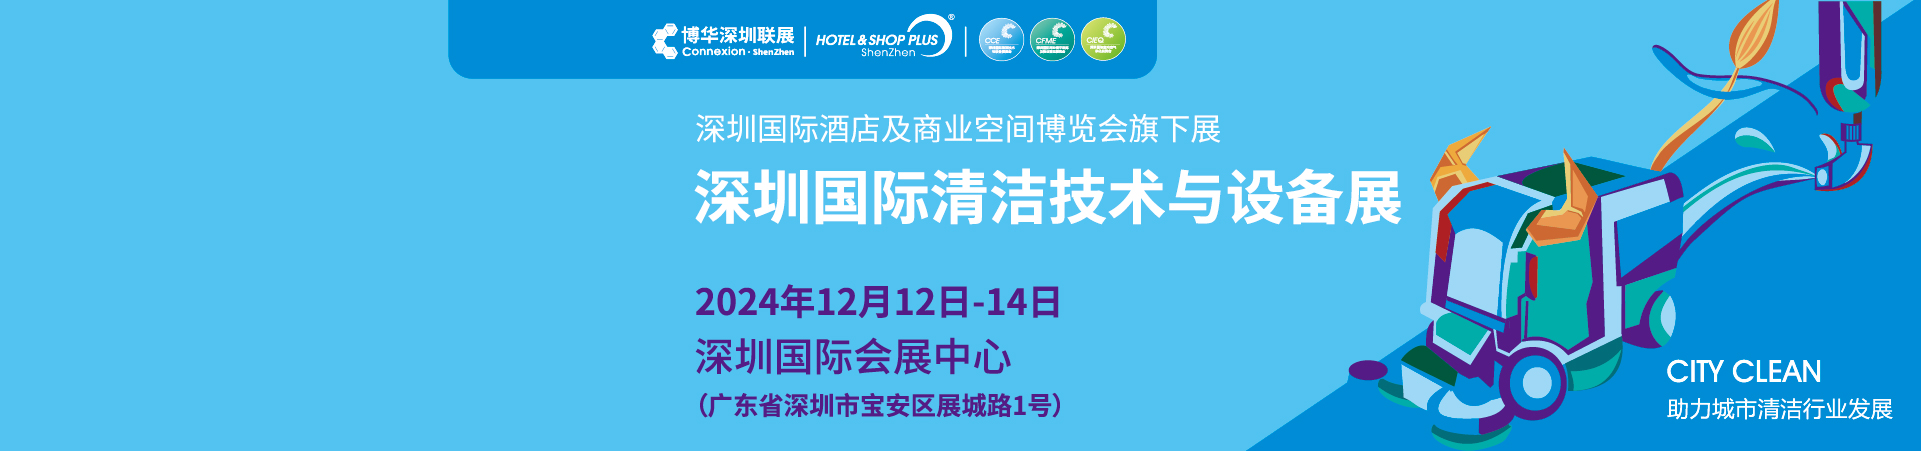 CCE深圳国际清洁技术与设备展